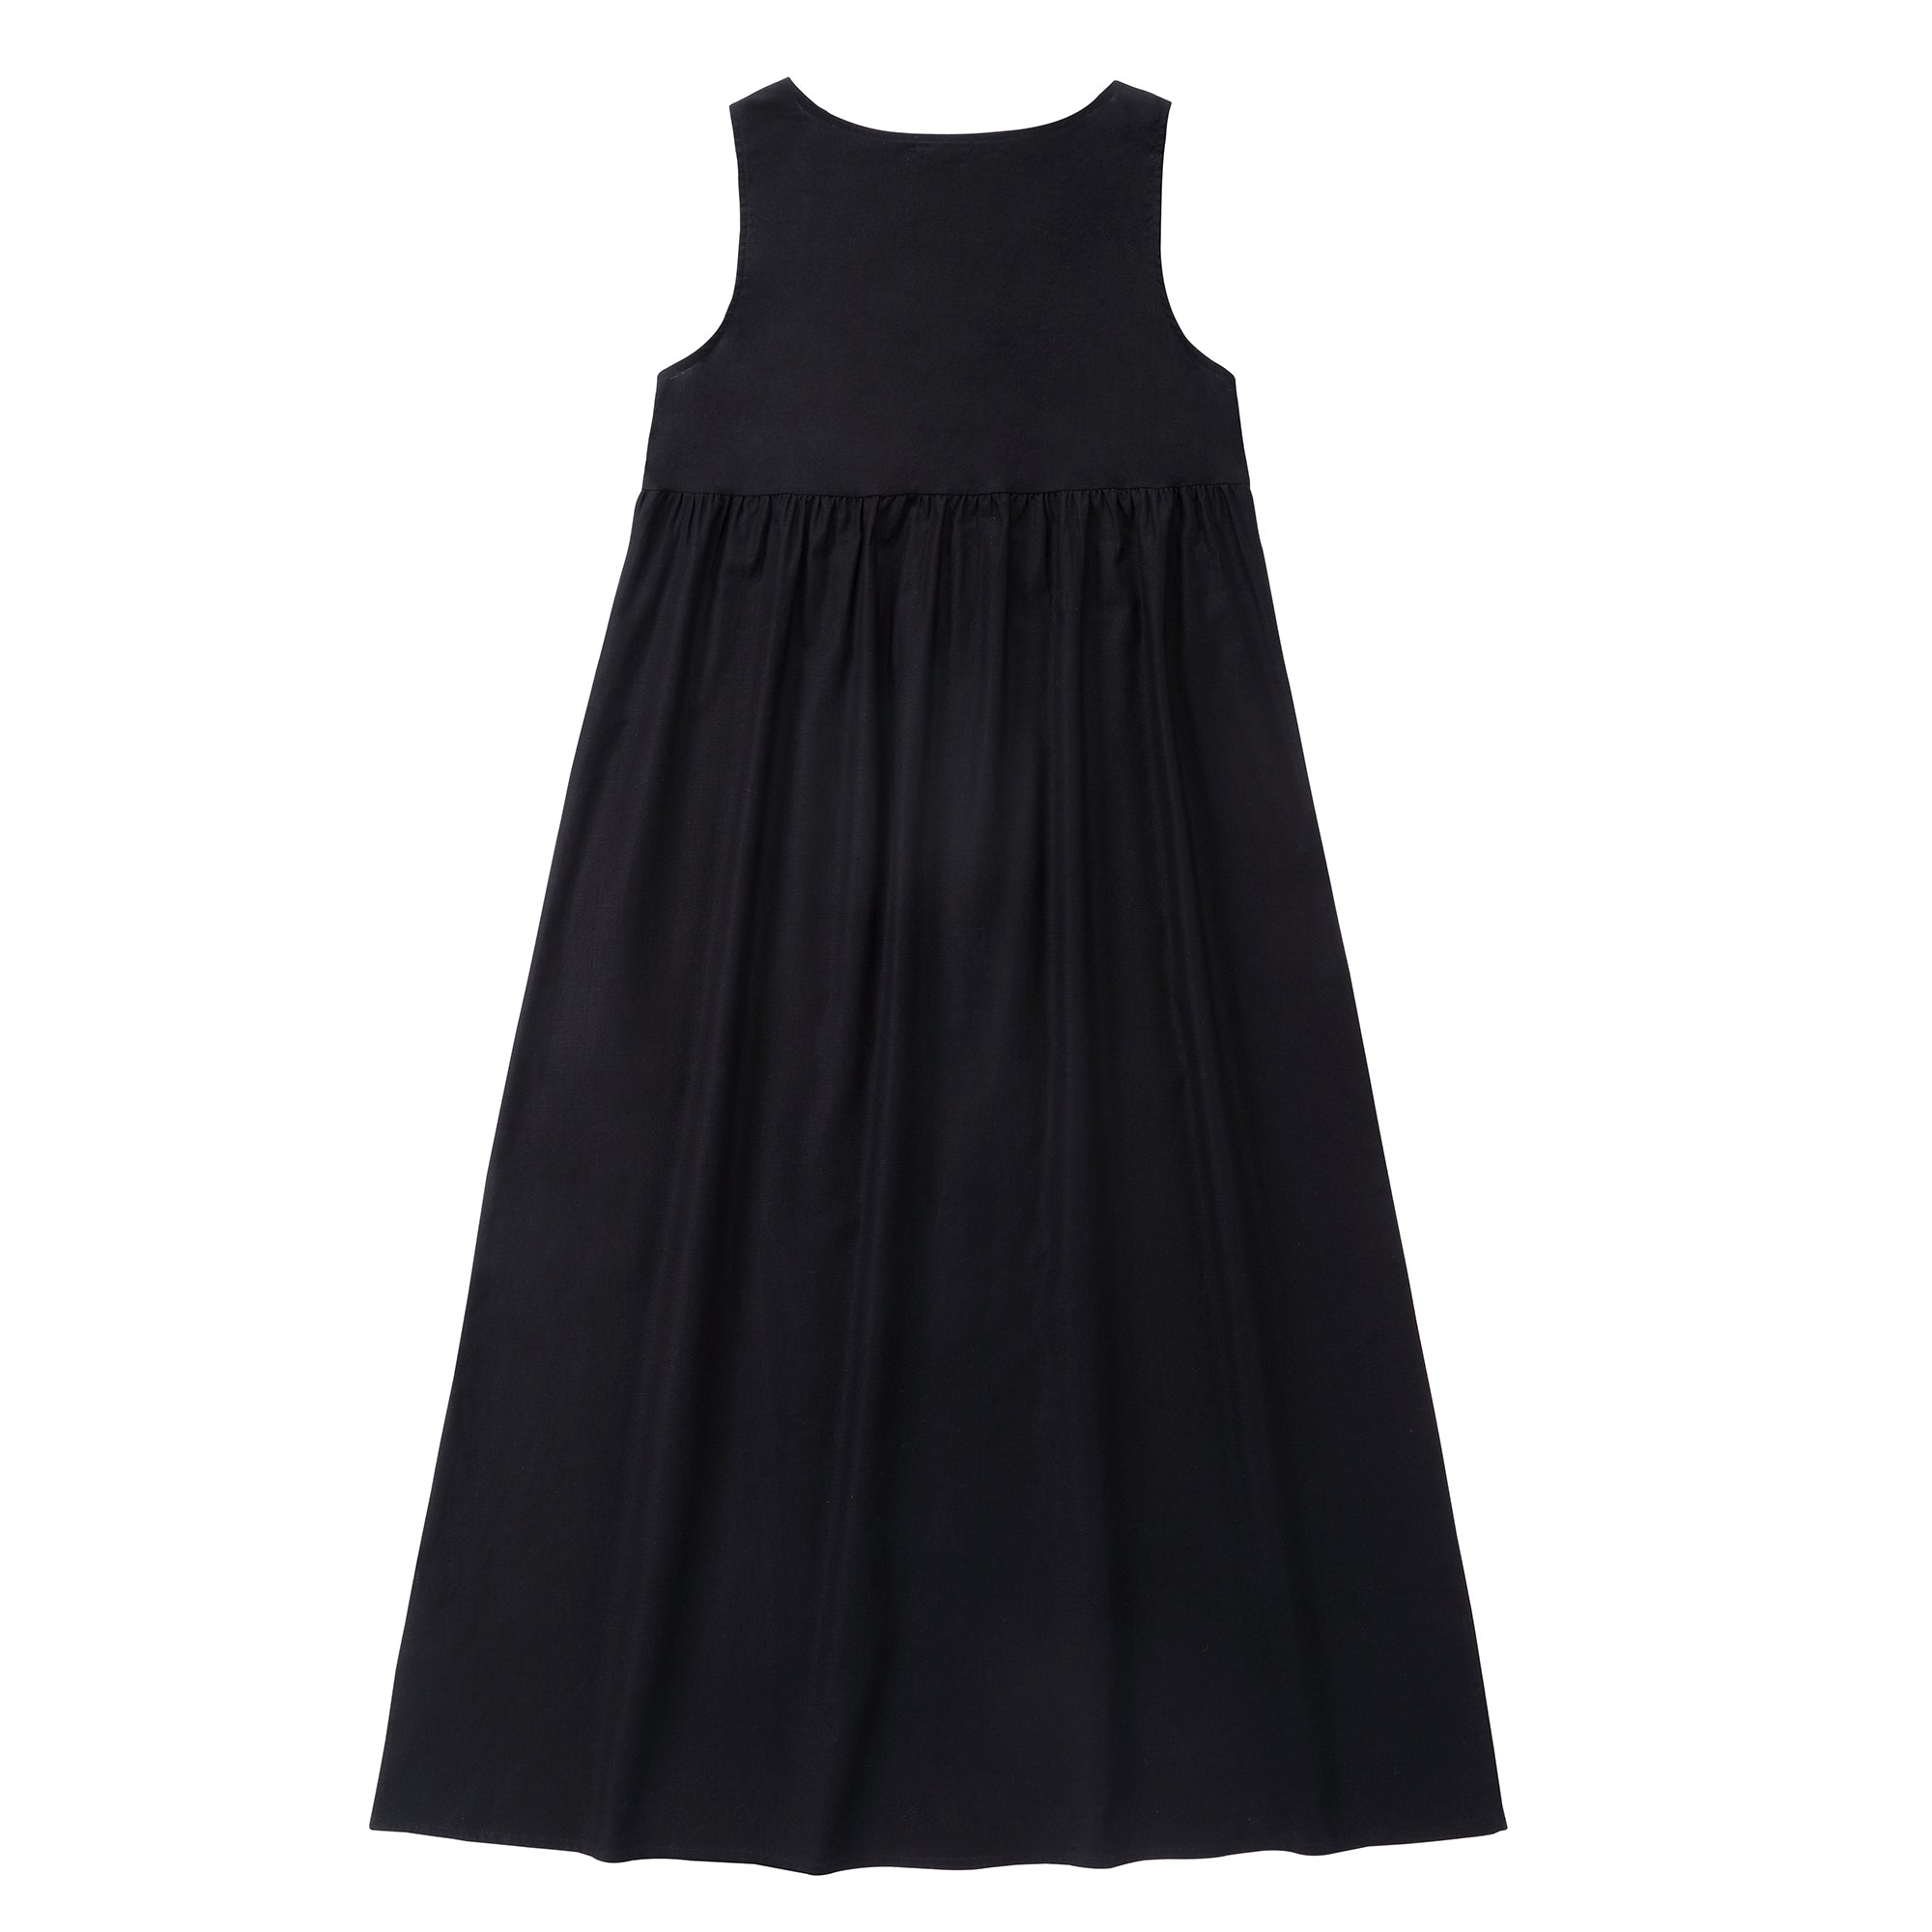 Black Sleeveless Button Dress